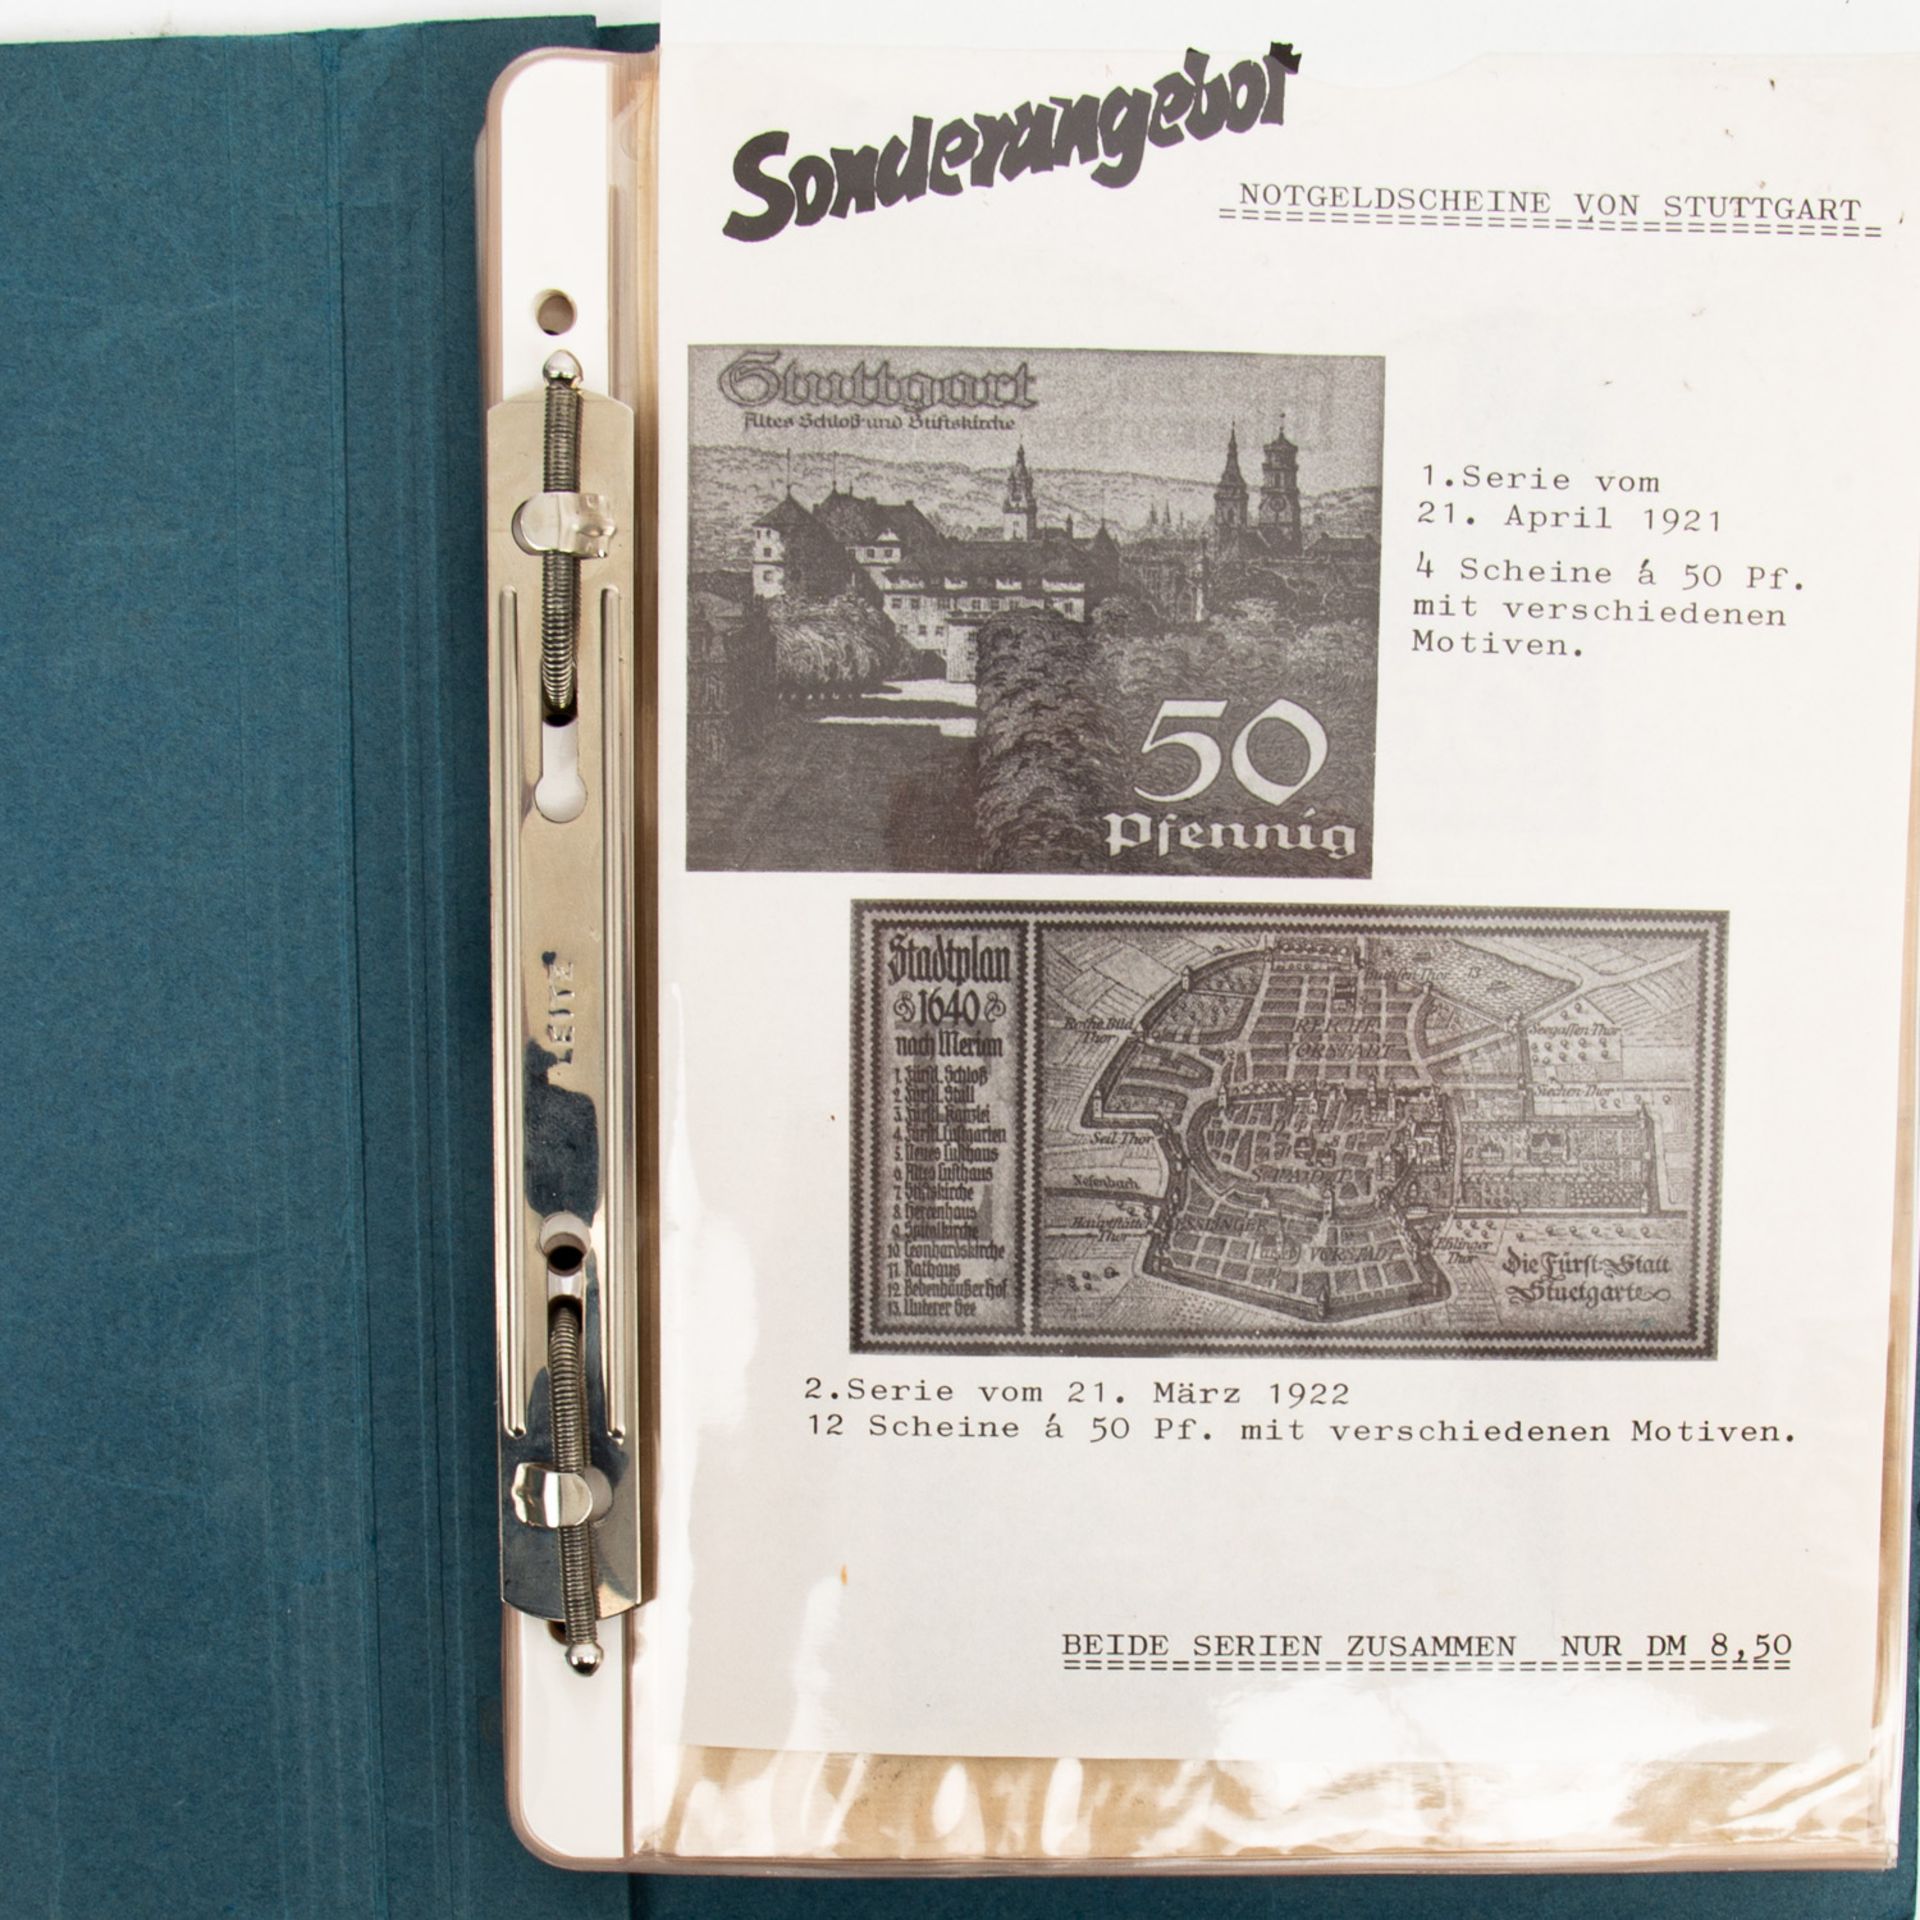 Banknotensammlung - Kleines Album, darunterStuttgart Stadtkassenscheine, diverses Krie - Image 2 of 4